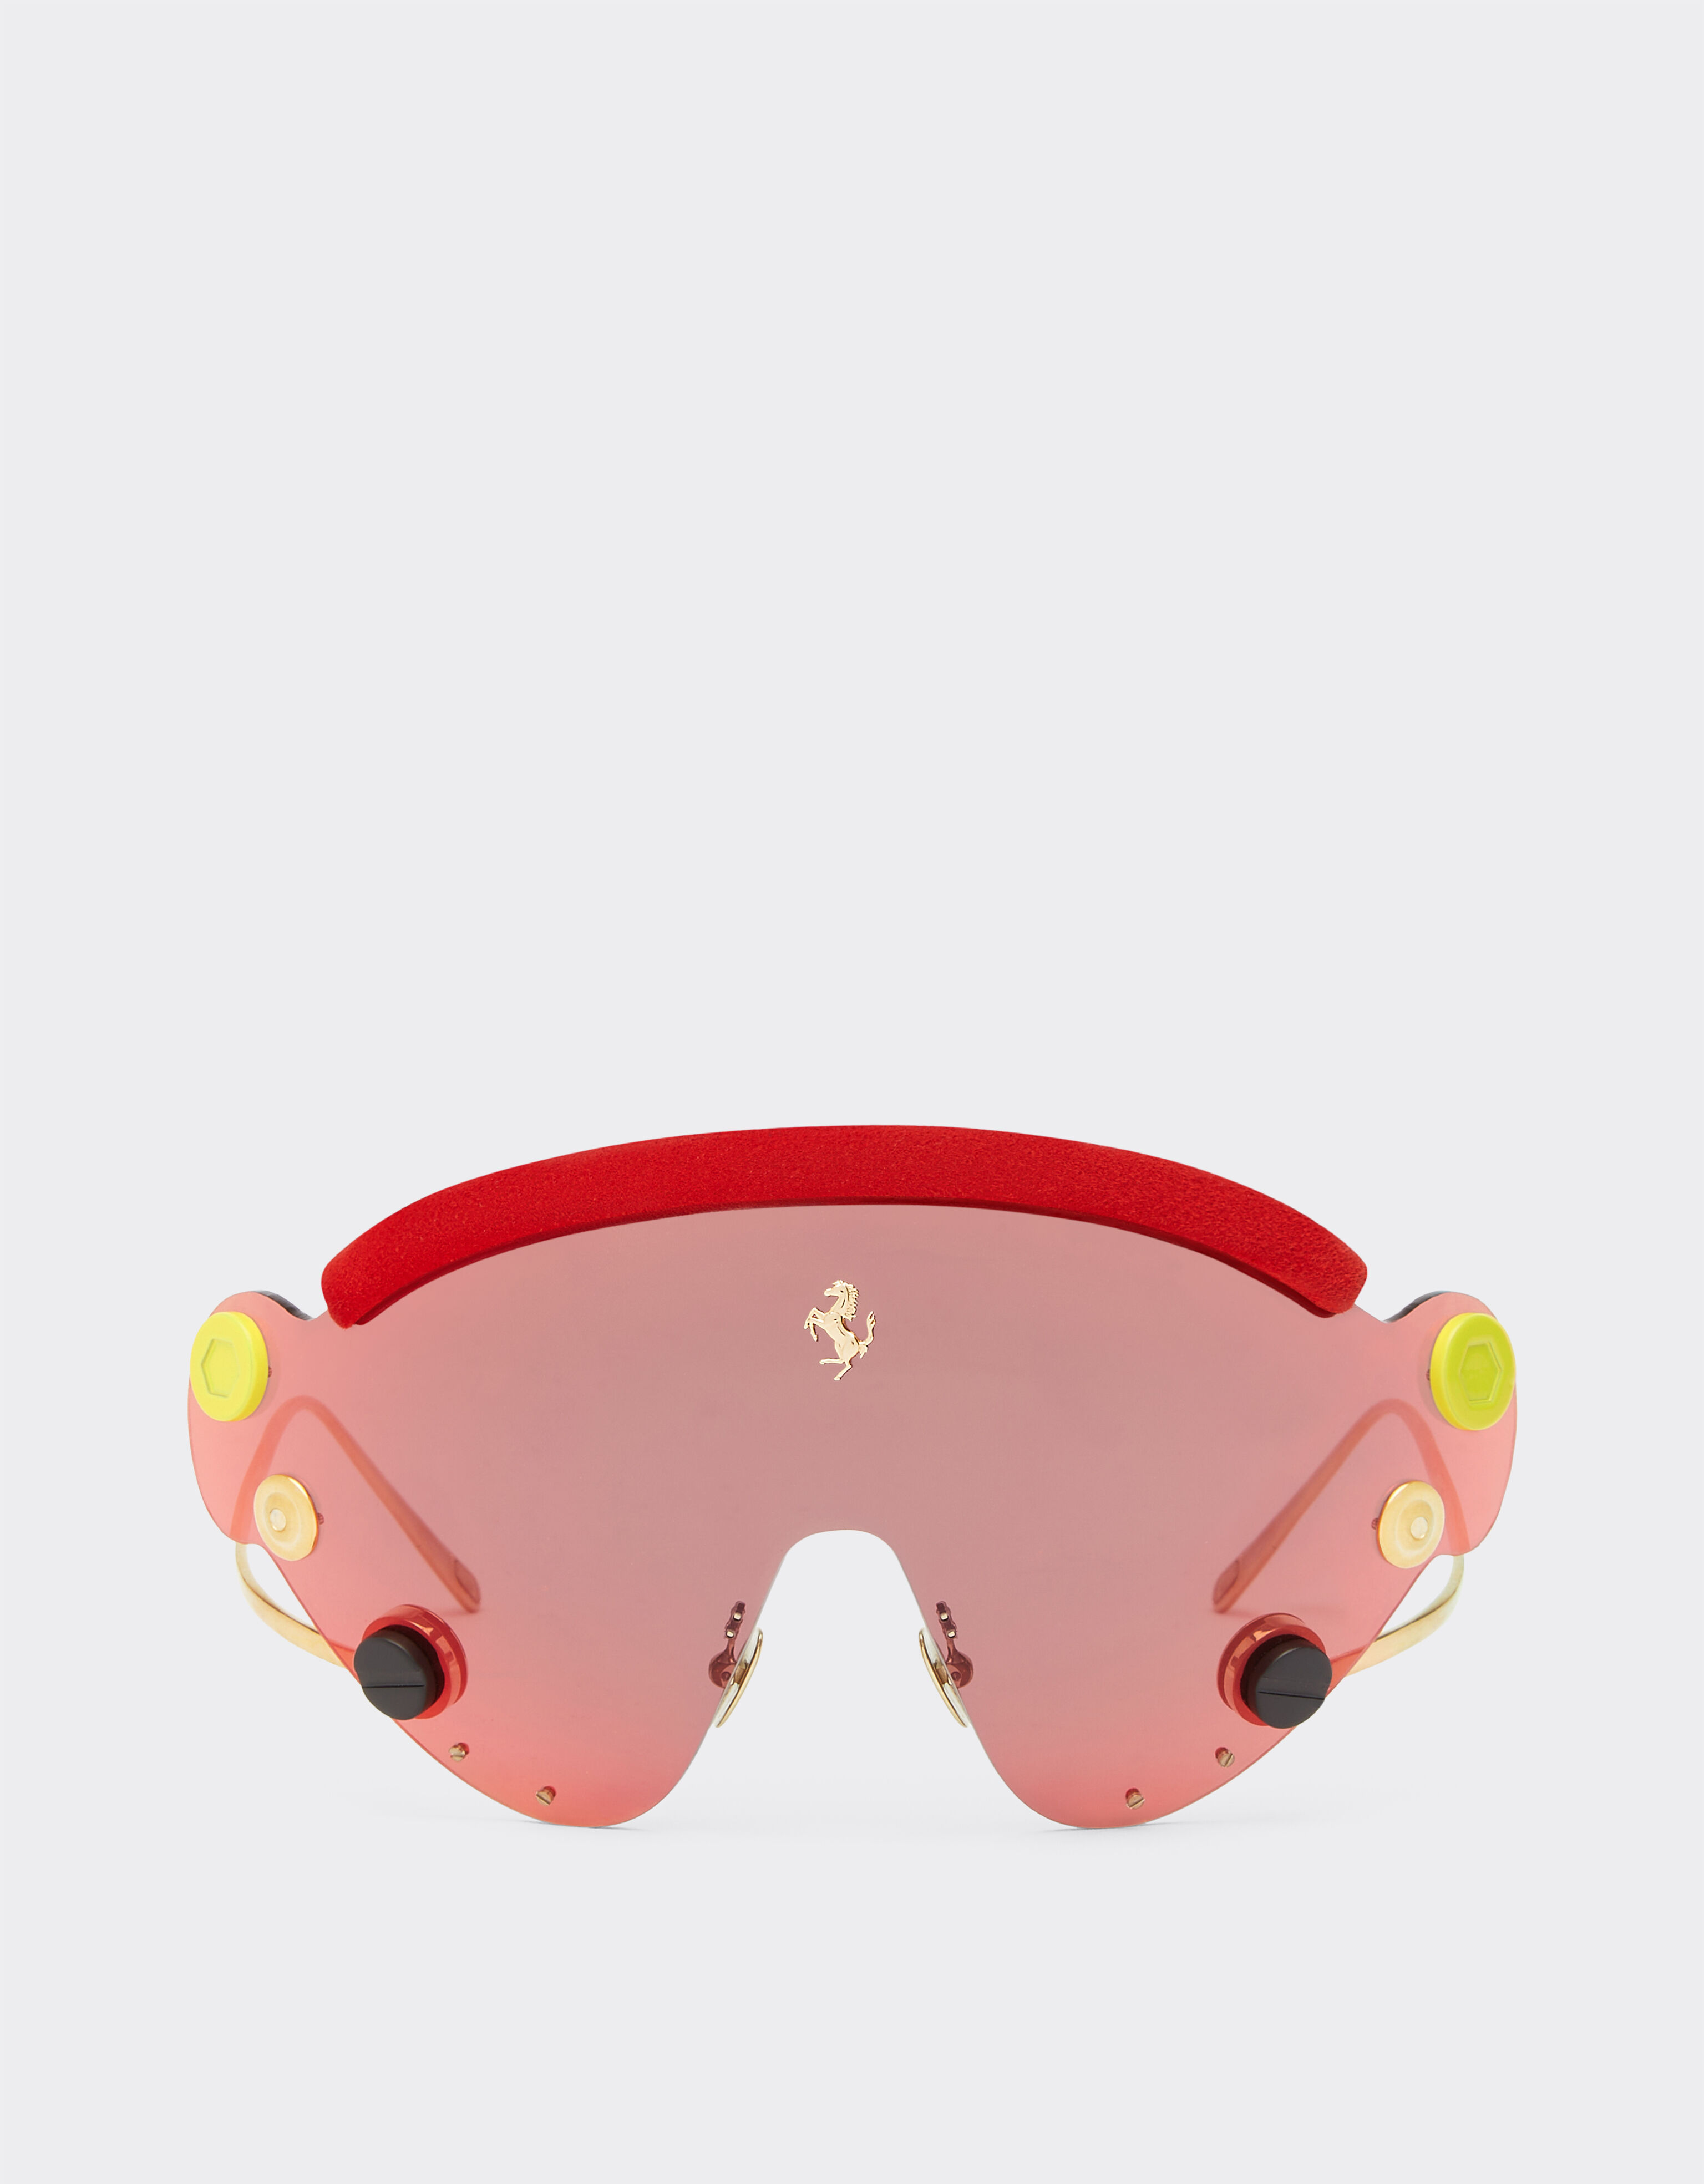 Ferrari Ferrari Limited Edition Sonnenbrille aus rotem und goldfarbenem Metall mit rot verspiegeltem Shield Gold F0411f